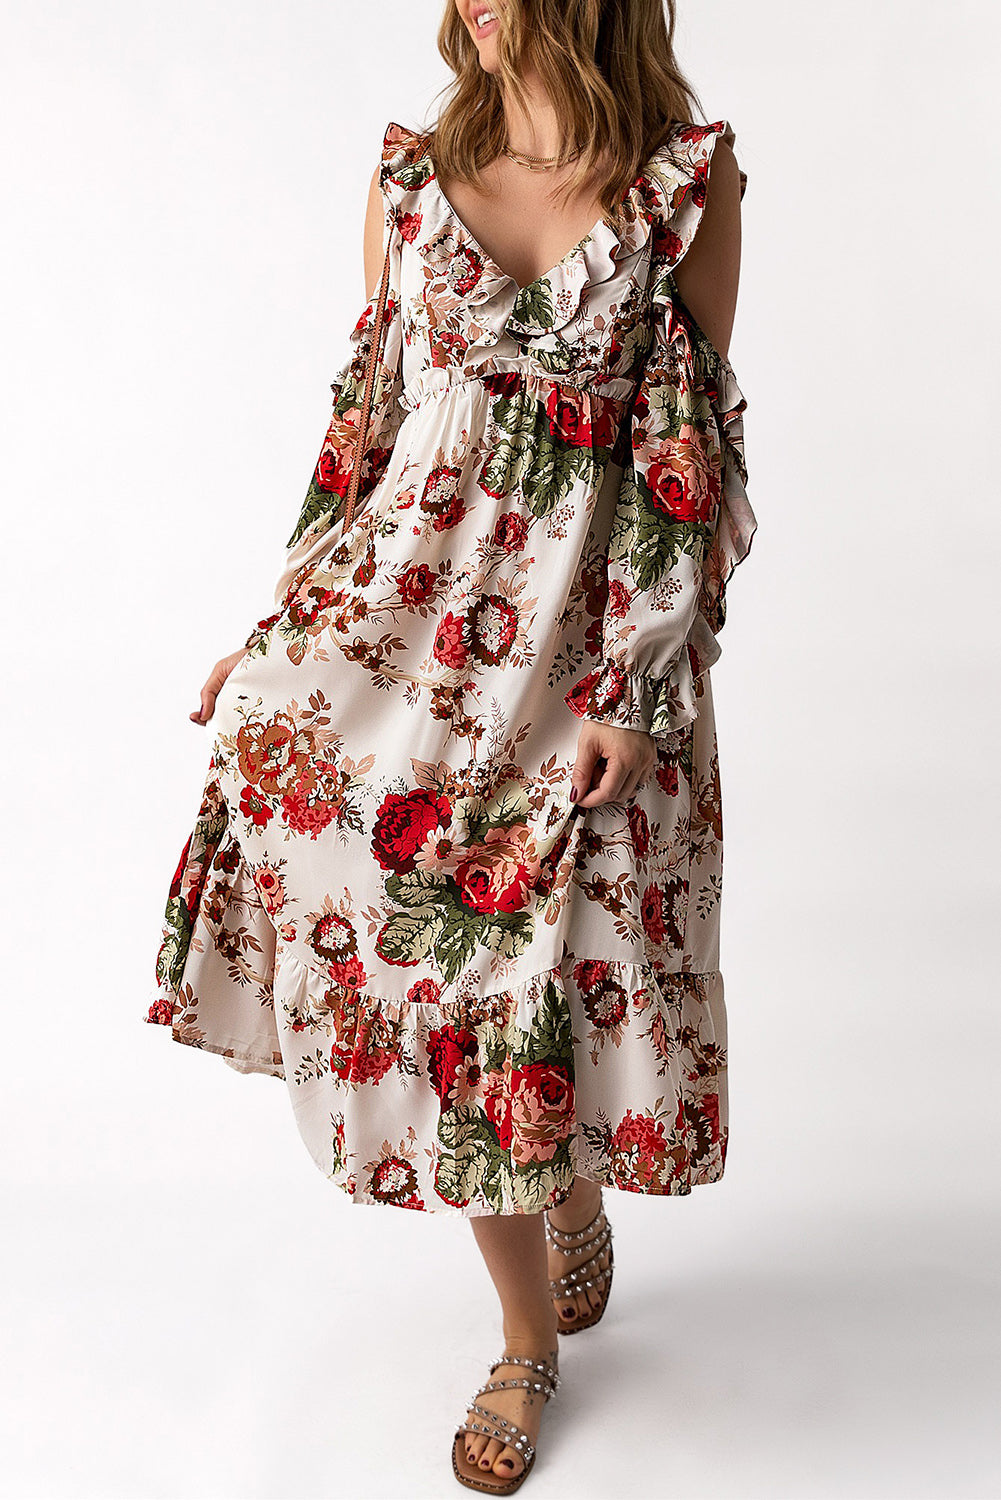 Apricot Hollow-out Shoulder Ruffle Floral Dress Floral Dresses JT's Designer Fashion